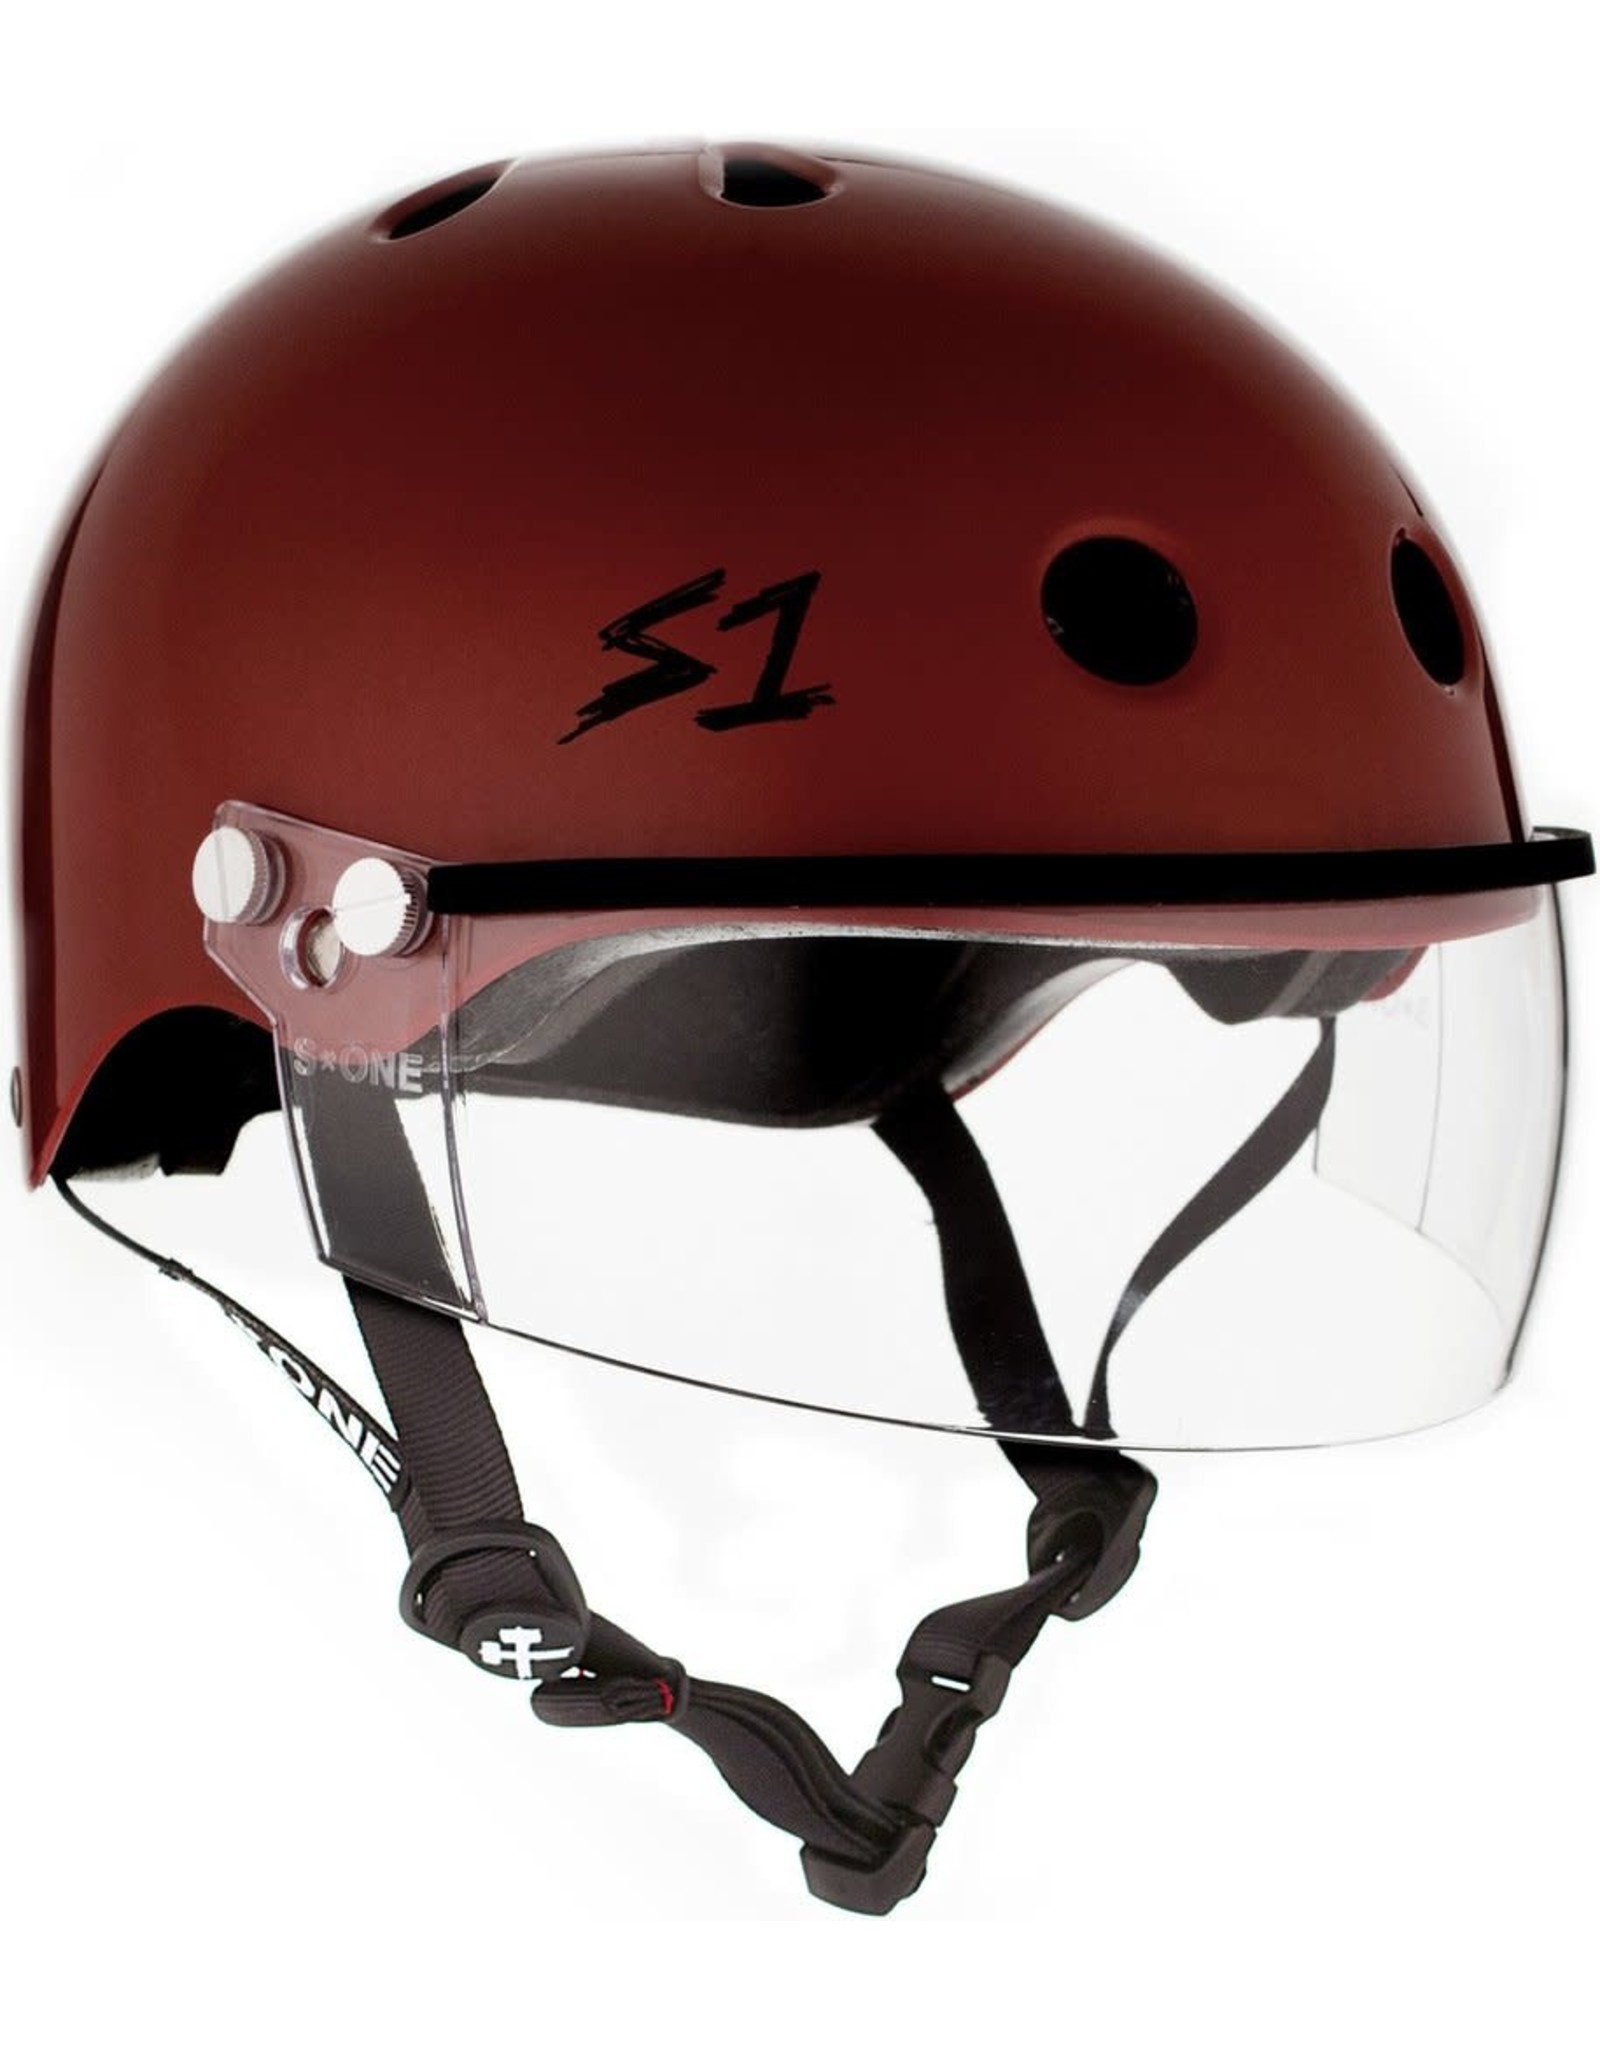 S-One S1 Lifer Visor Helmet